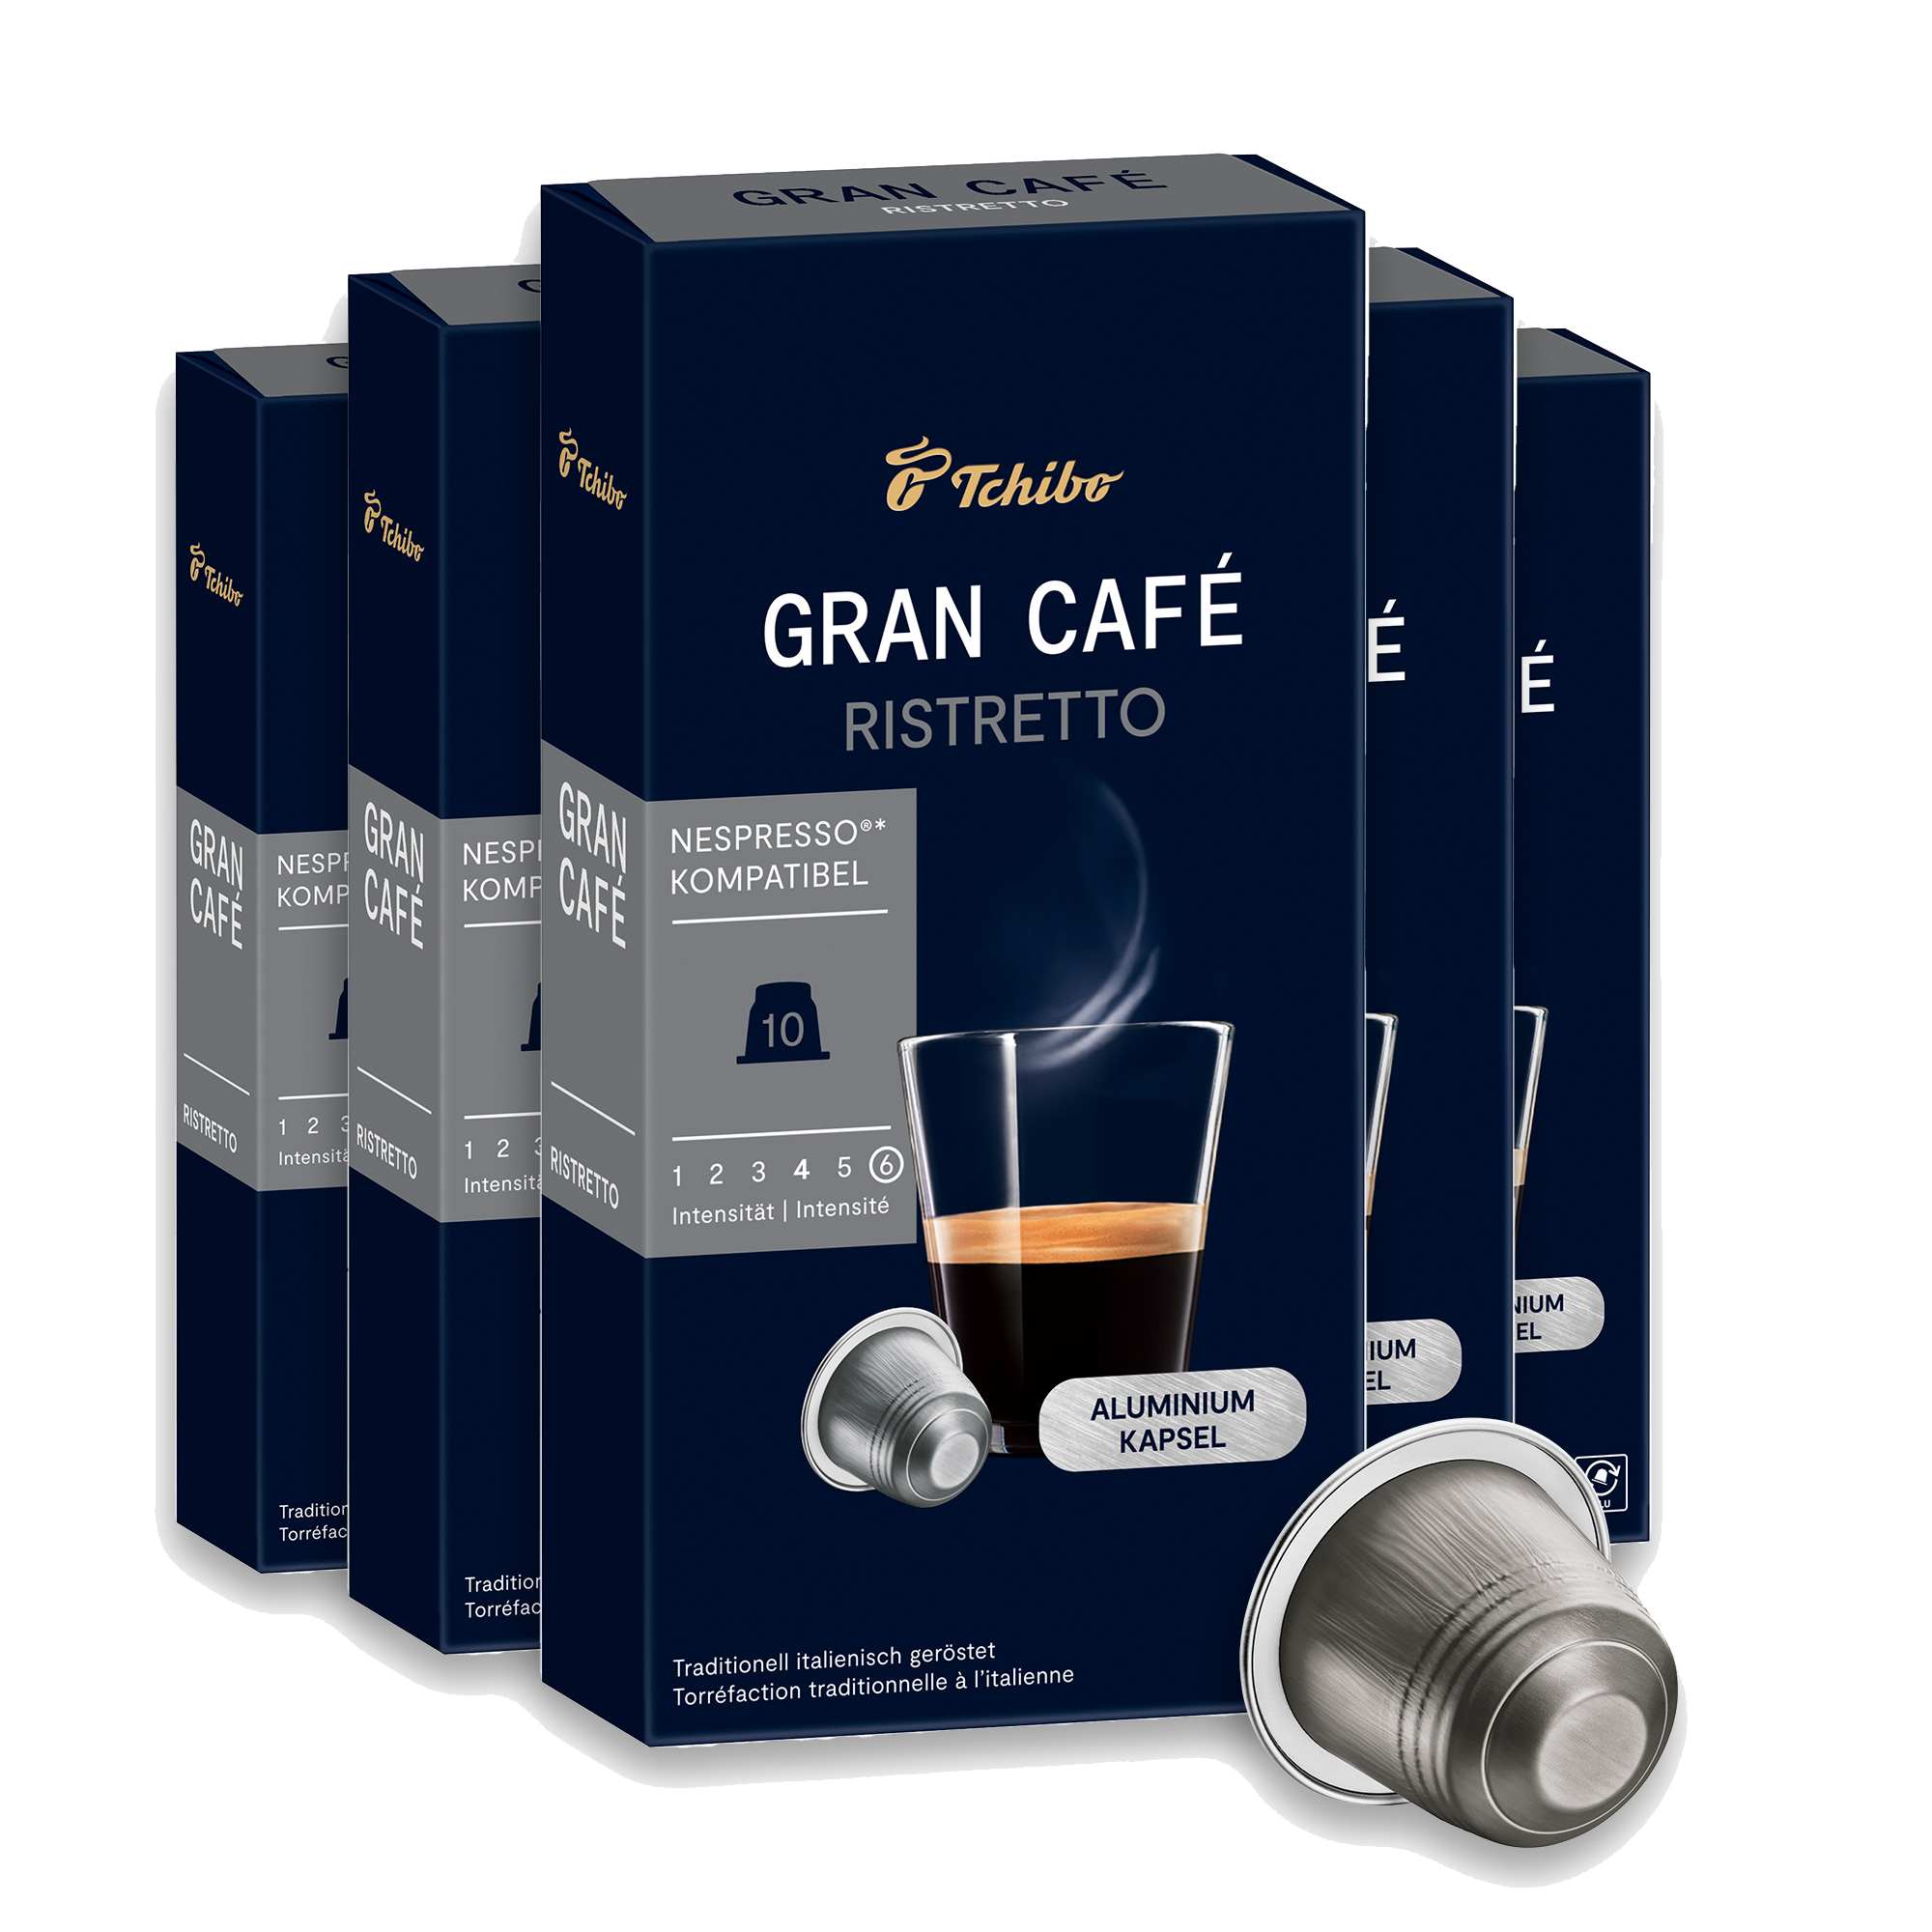 Gran Café Ristretto (Subscription)